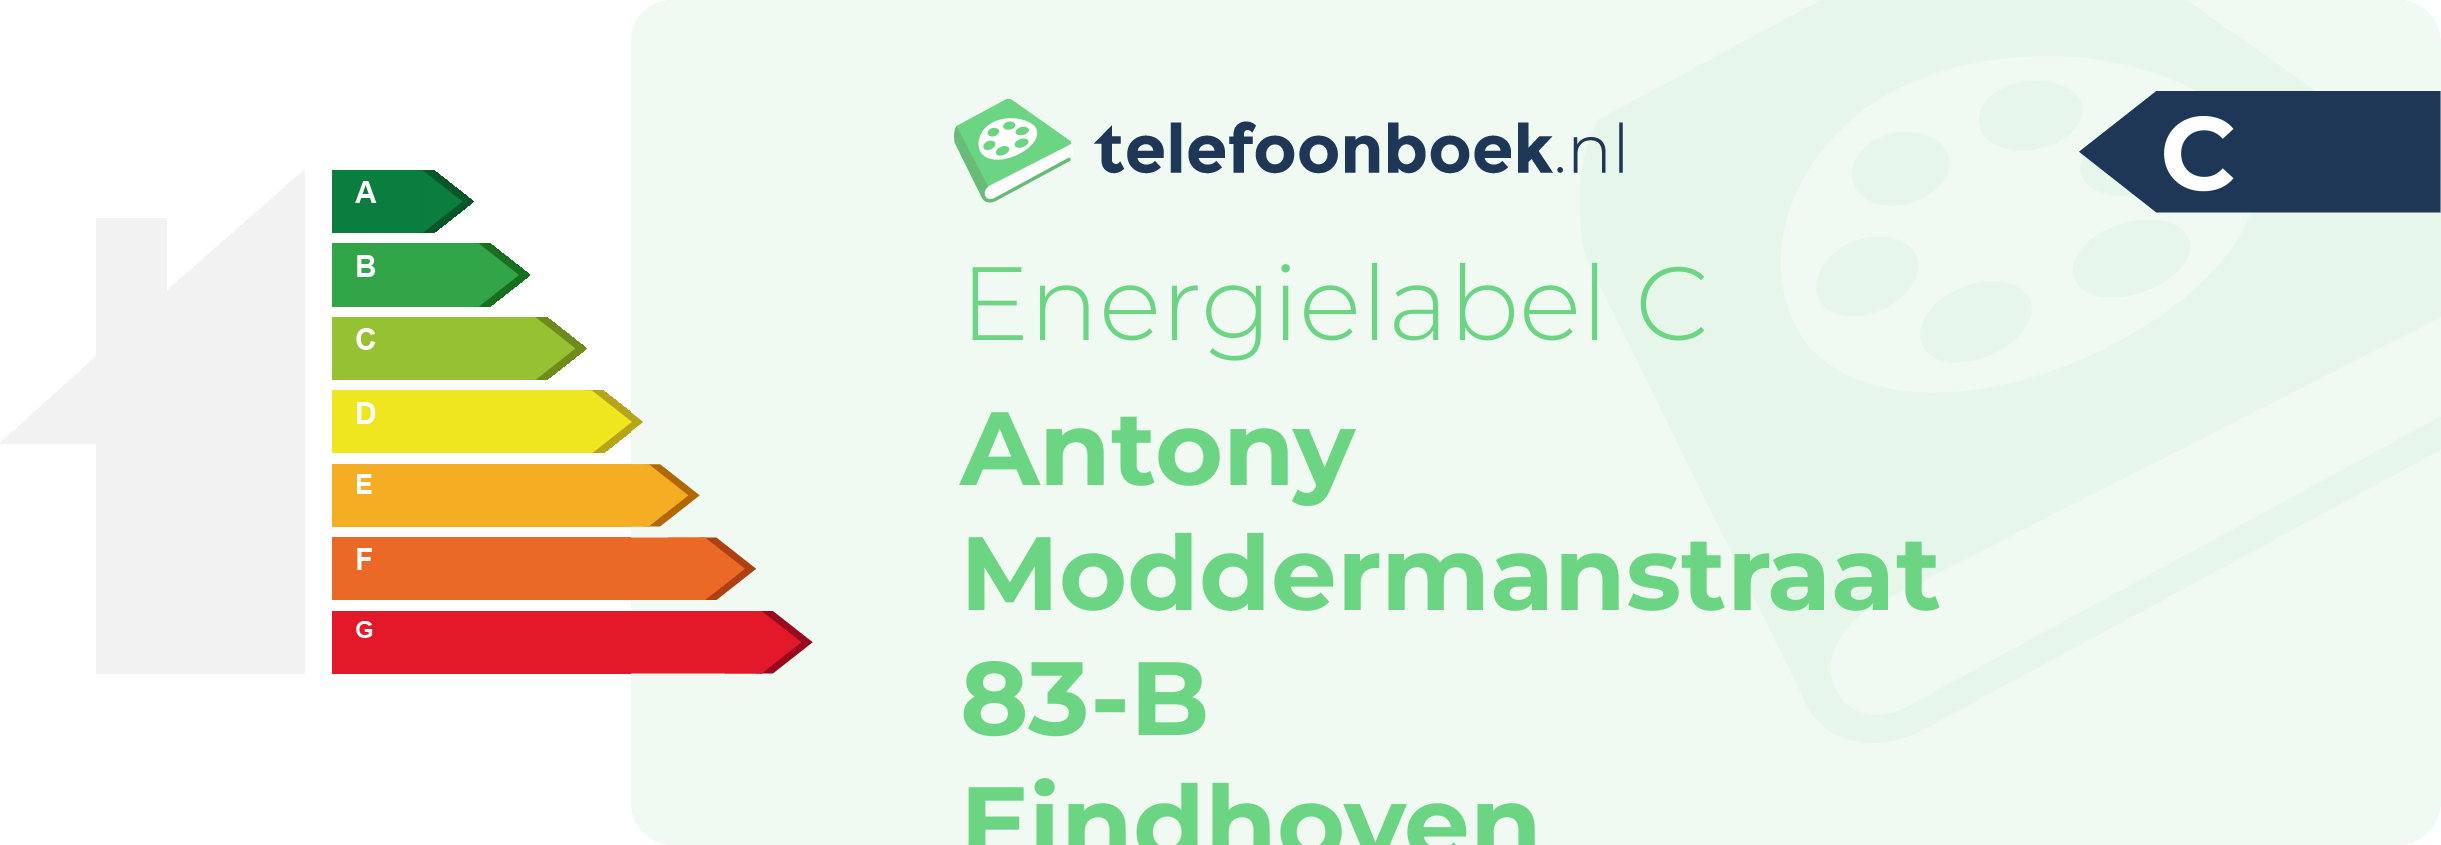 Energielabel Antony Moddermanstraat 83-B Eindhoven